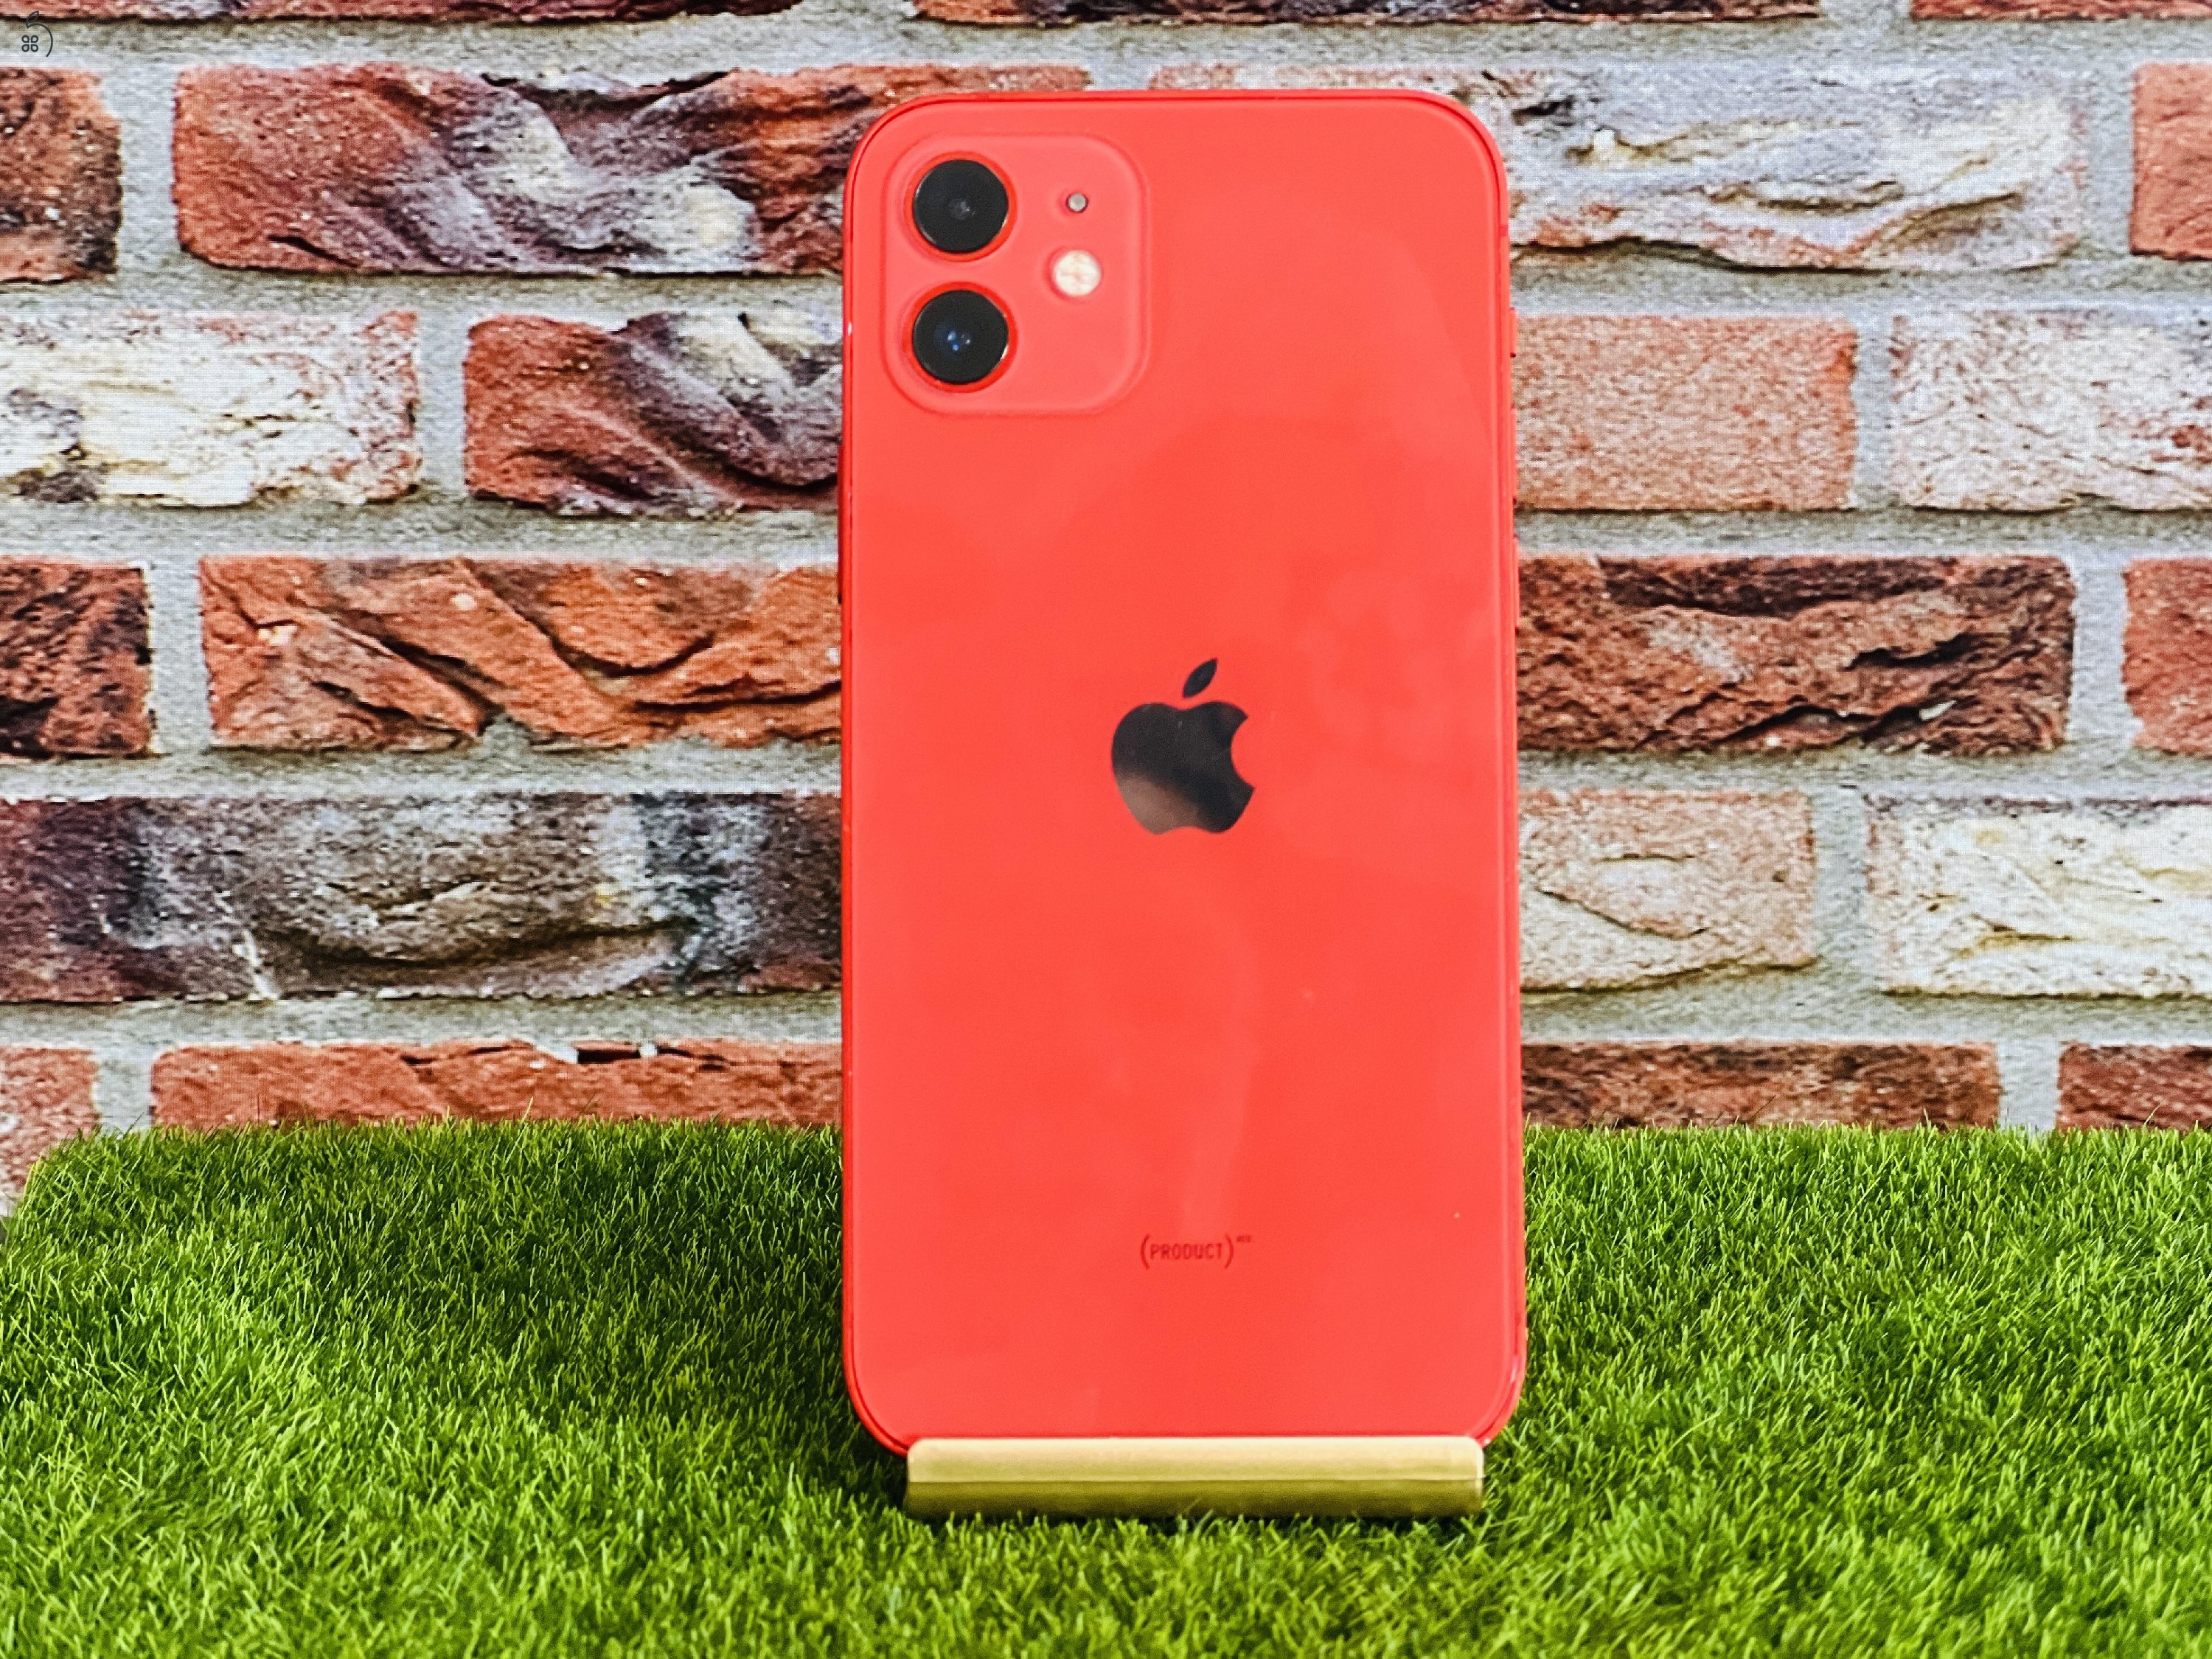 Eladó iPhone 12 64 GB PRODUCT RED szép állapotú - 12 HÓ GARANCIA - R7623